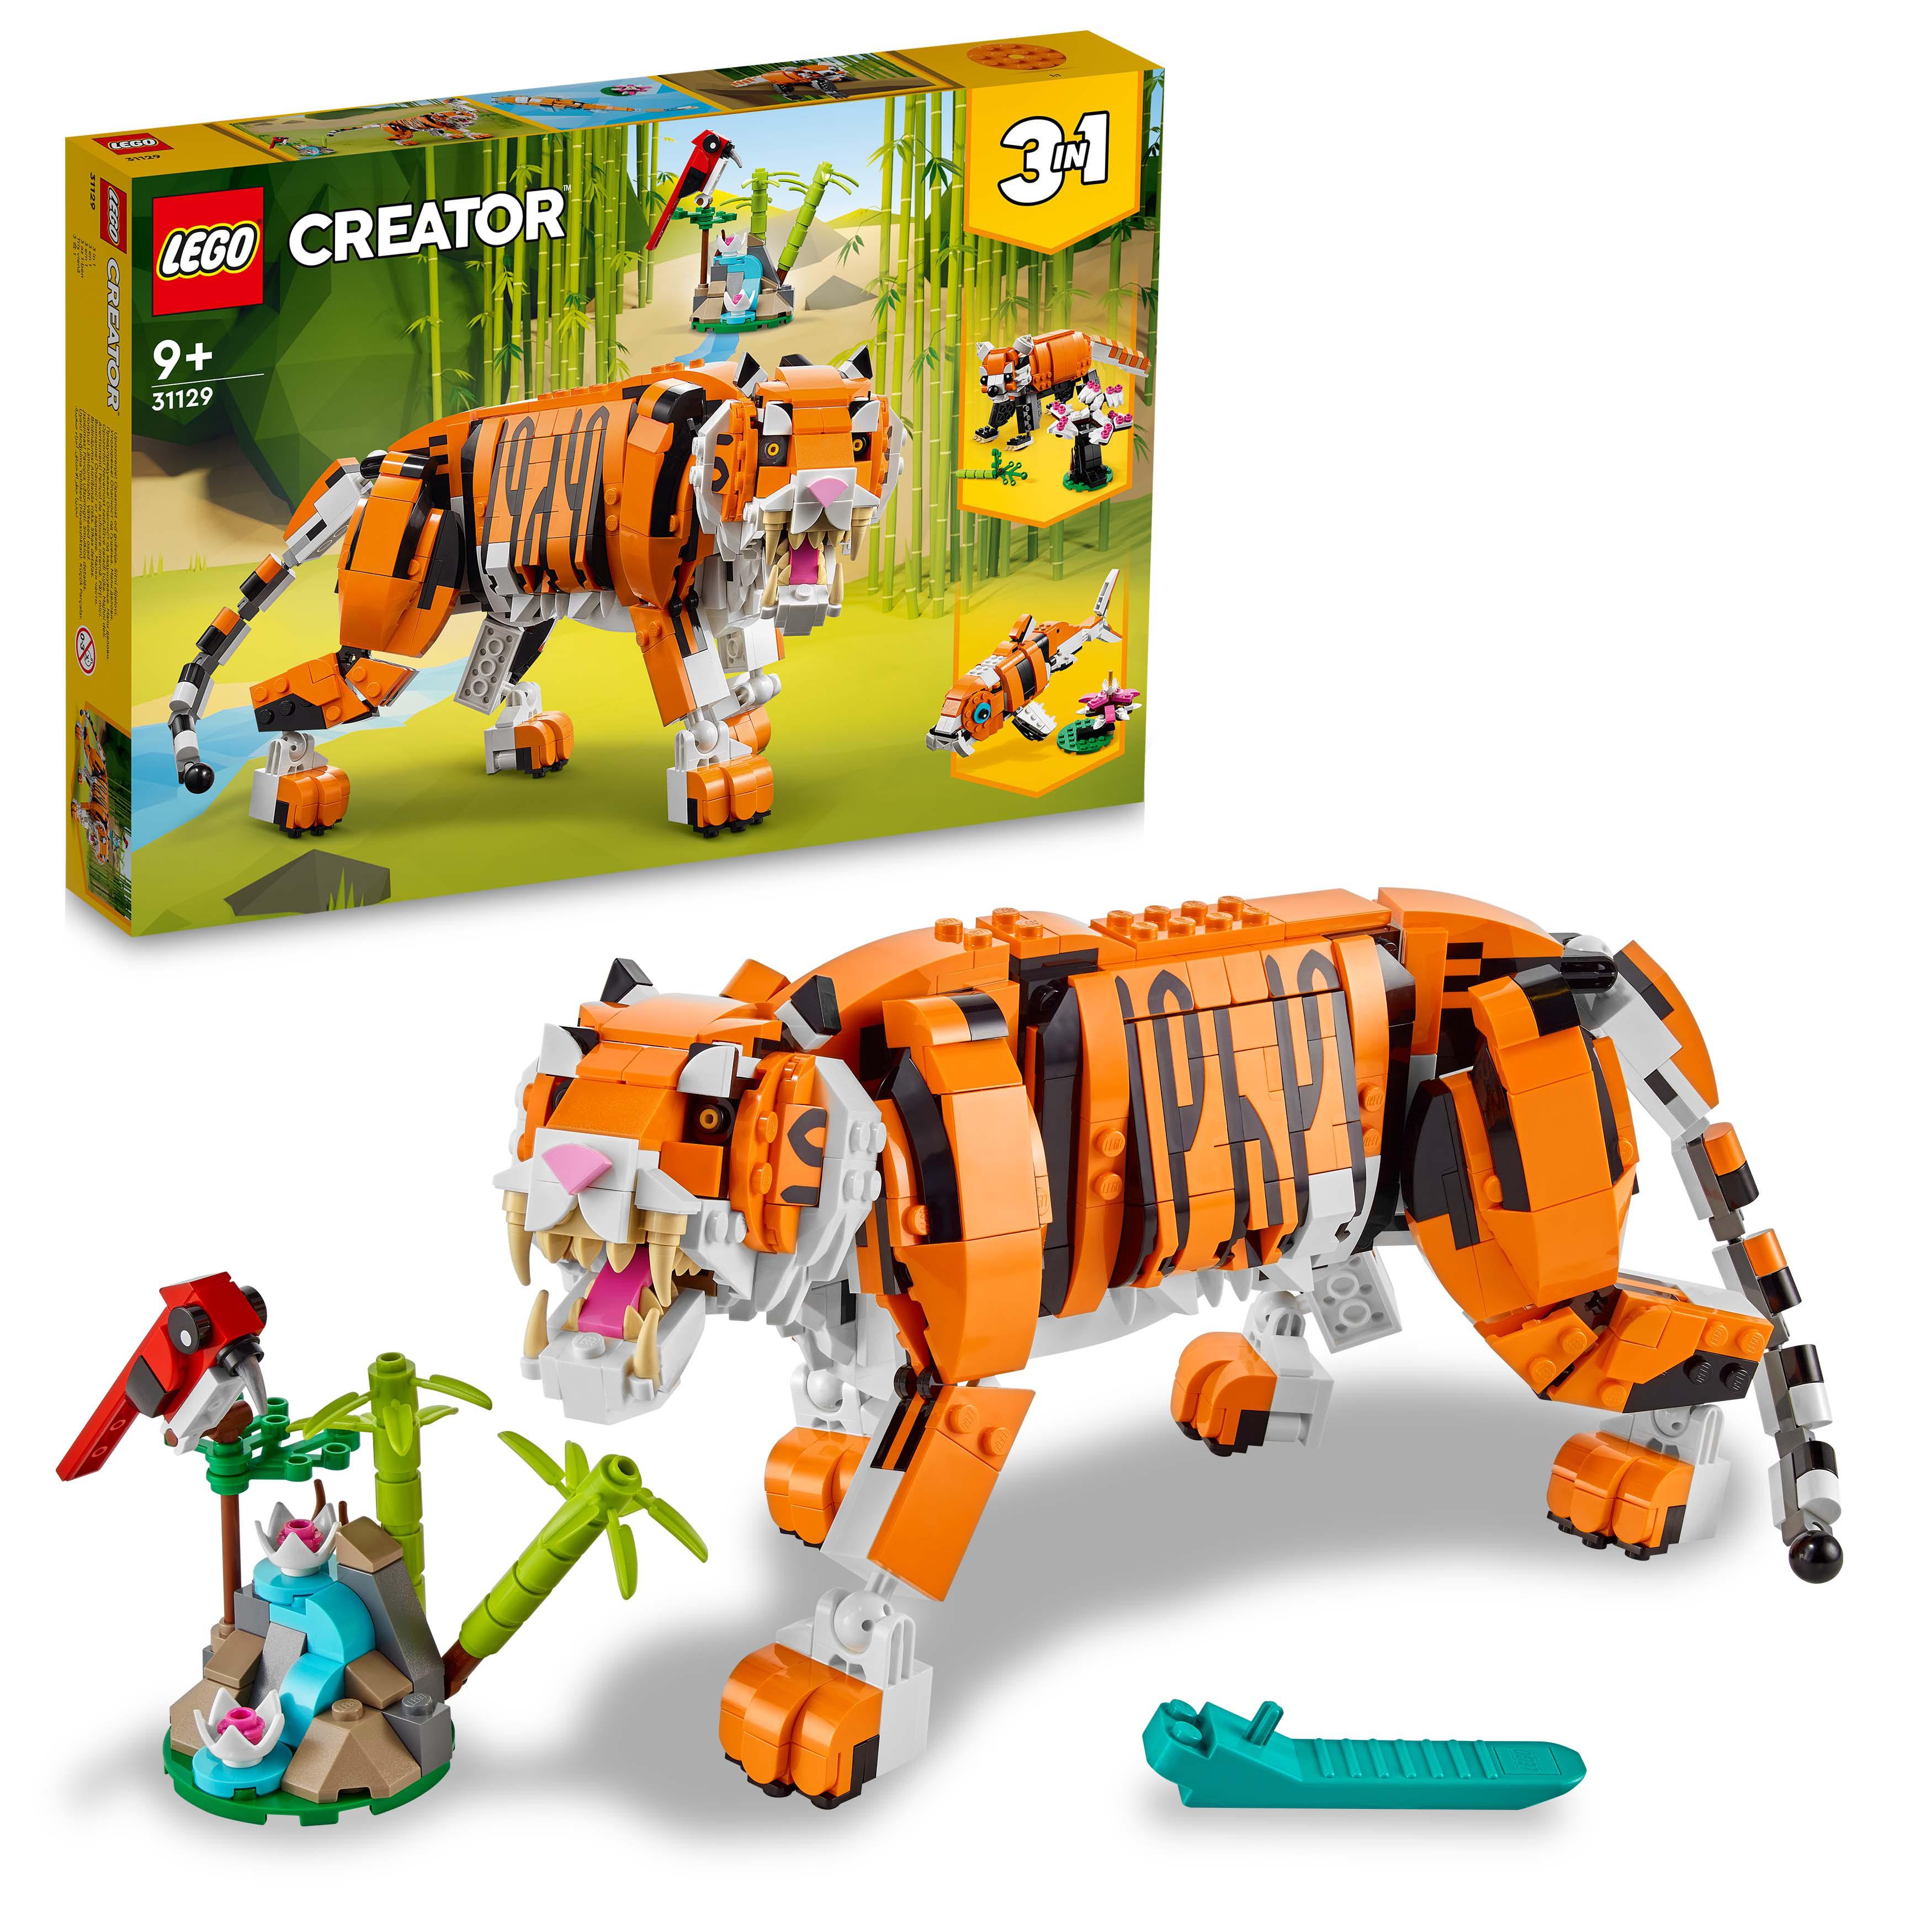 LEGO Creator 3 in 1 Tigre Maestosa, Si Trasforma in Panda o Pesce, Giocattolo Cr 31129, , large